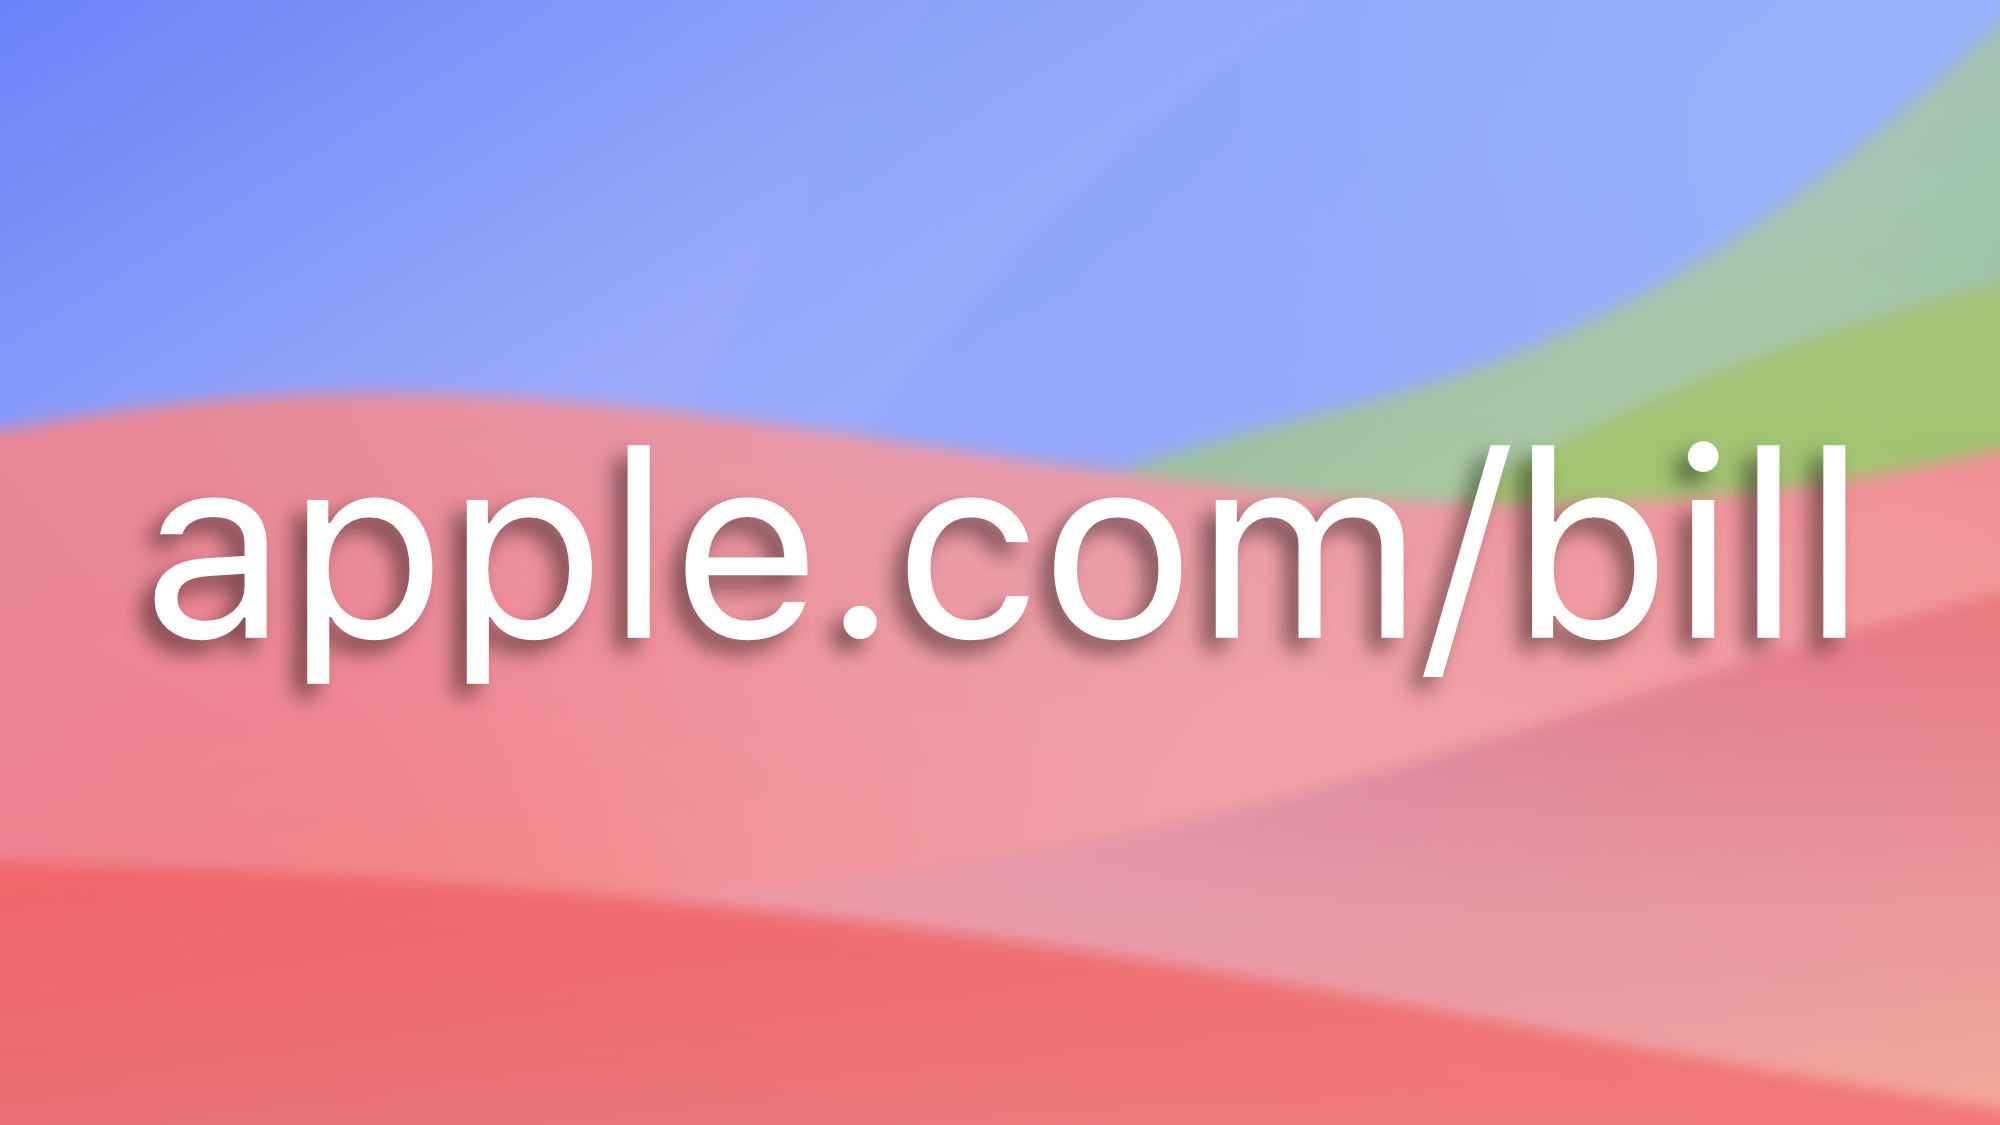 "apple.com/bill": qué significa este cargo en mi tarjeta